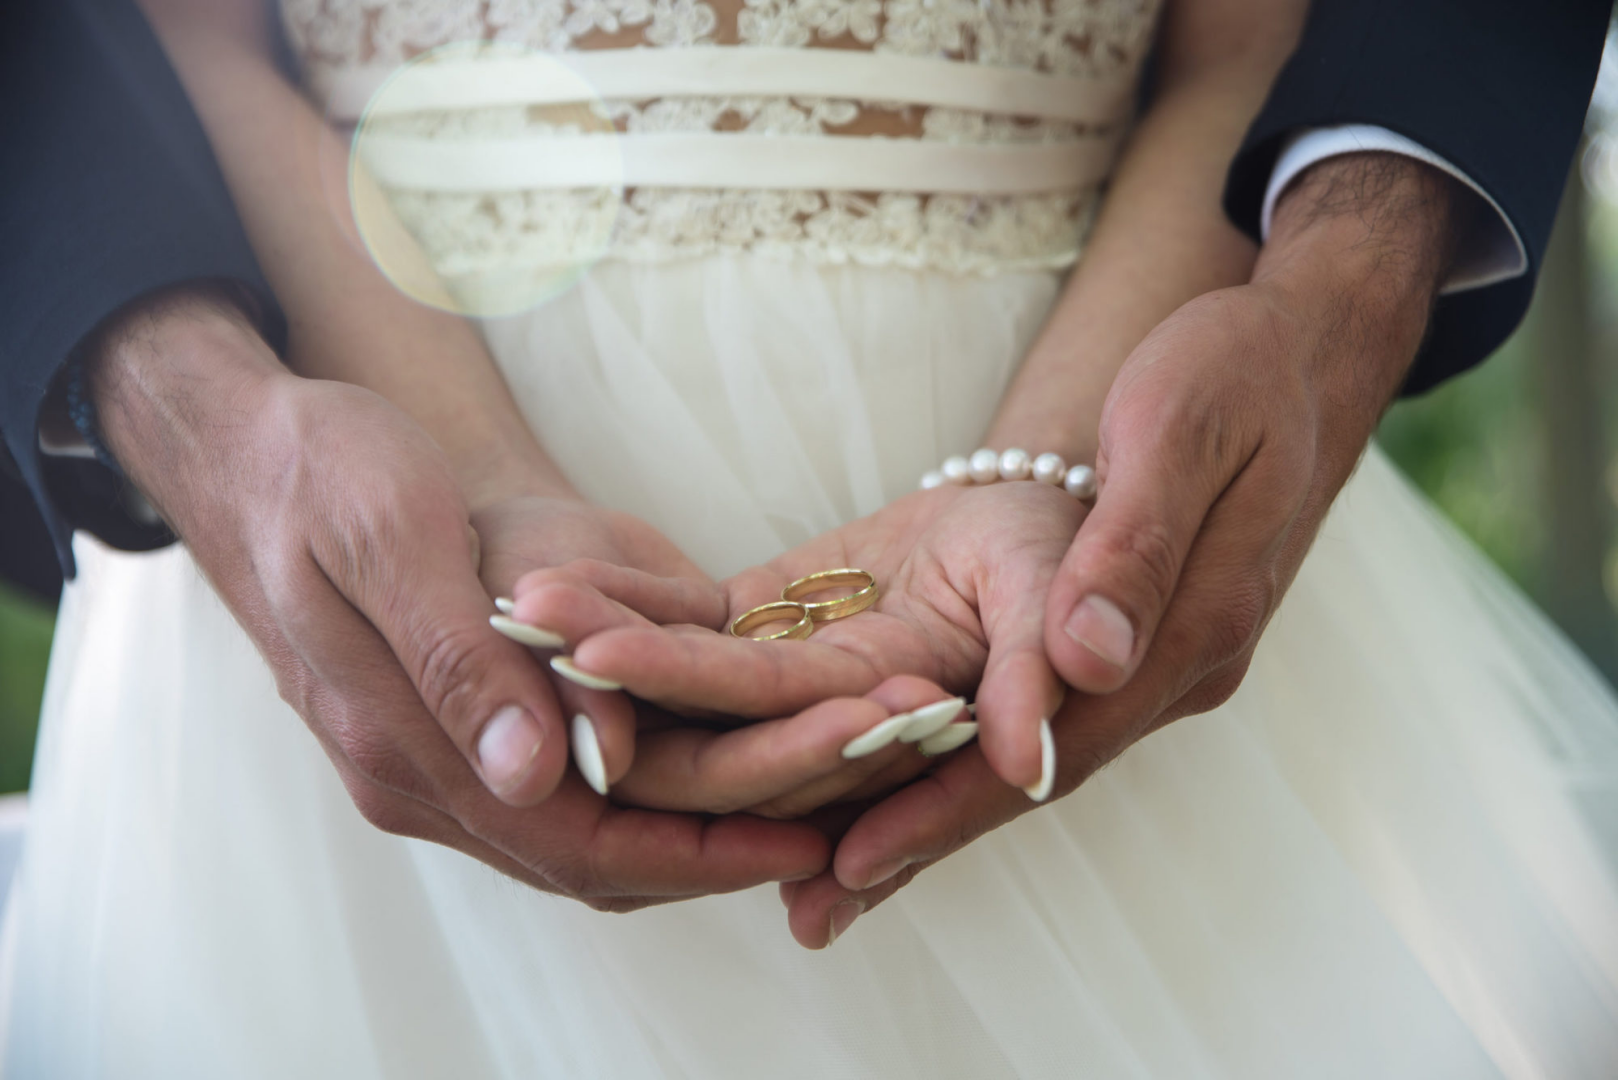 Пособие по вступлению в брак. Брак. Обручальные кольца на руках жениха и невесты. Свадьба руки с кольцами. Фото обручальных колец на руках жениха и невесты.